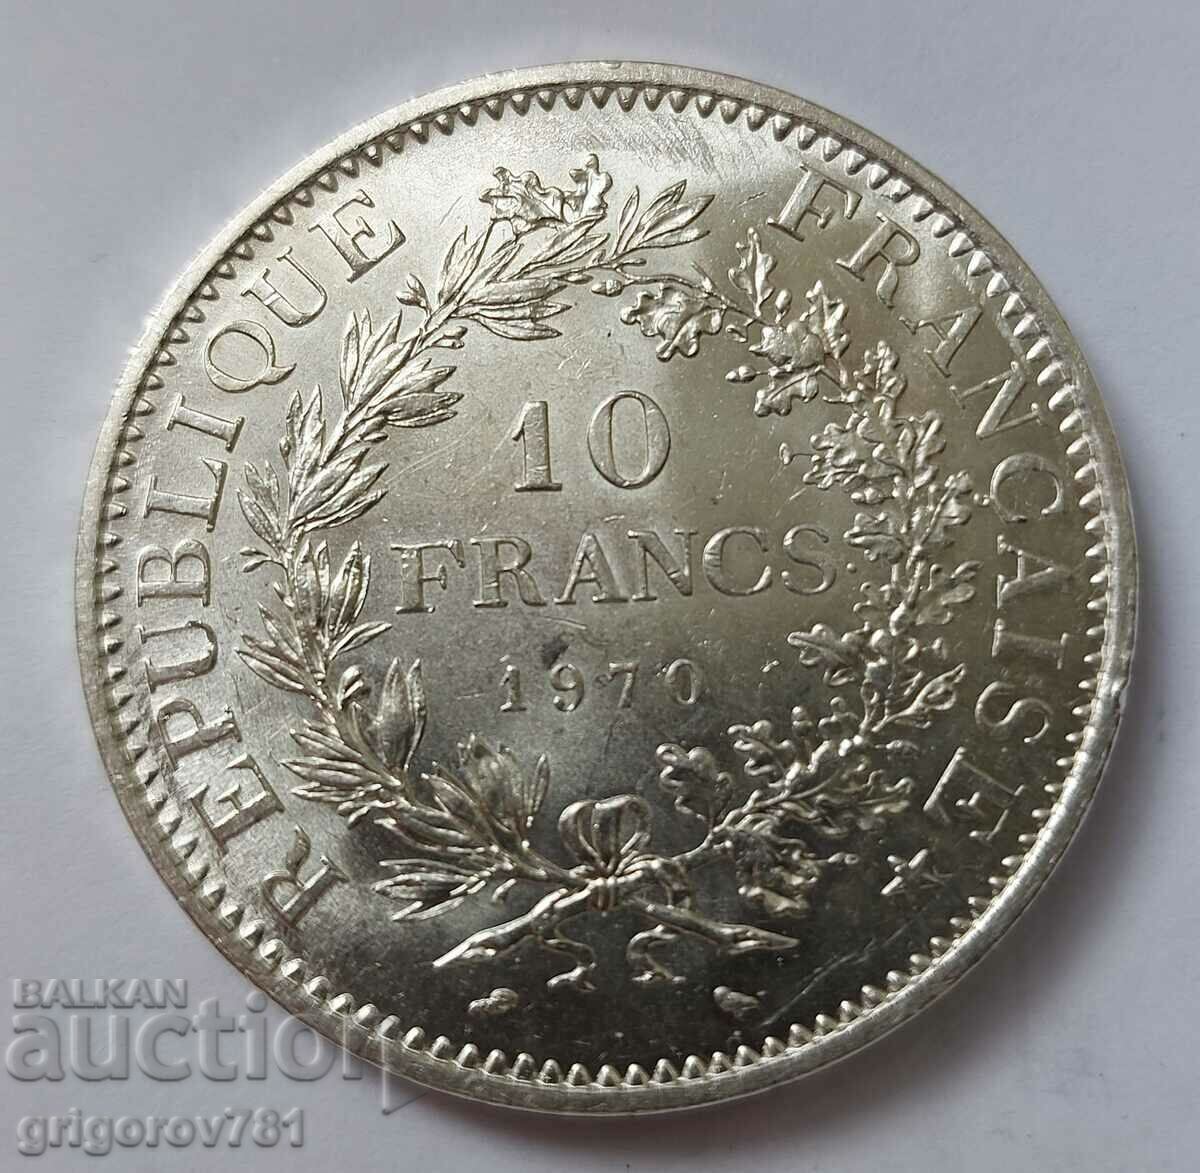 10 Φράγκα Ασήμι Γαλλία 1970 - Ασημένιο νόμισμα #62